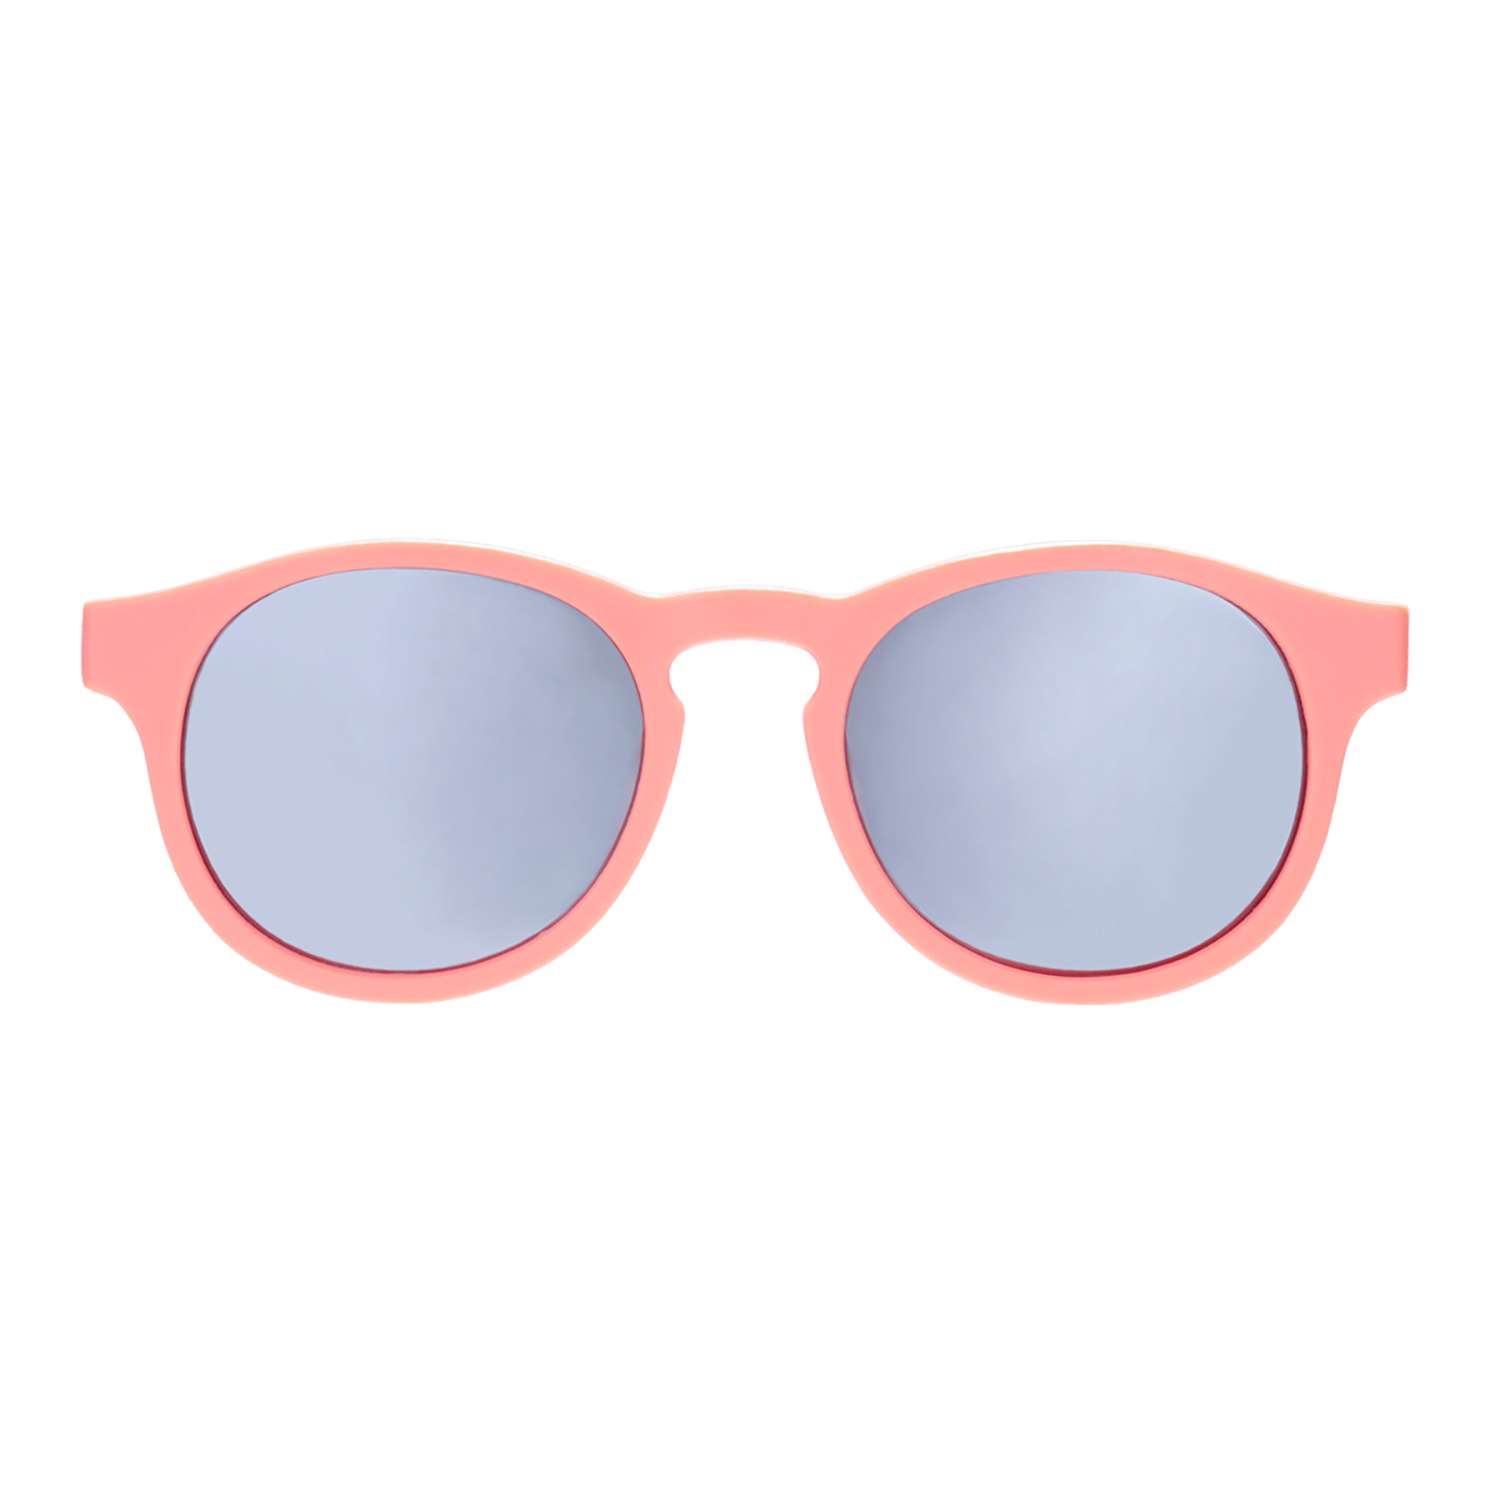 Солнцезащитные очки Babiators Blue Series Keyhole Polarized Уезжаю на выходные 3-5 BLU-008 - фото 8